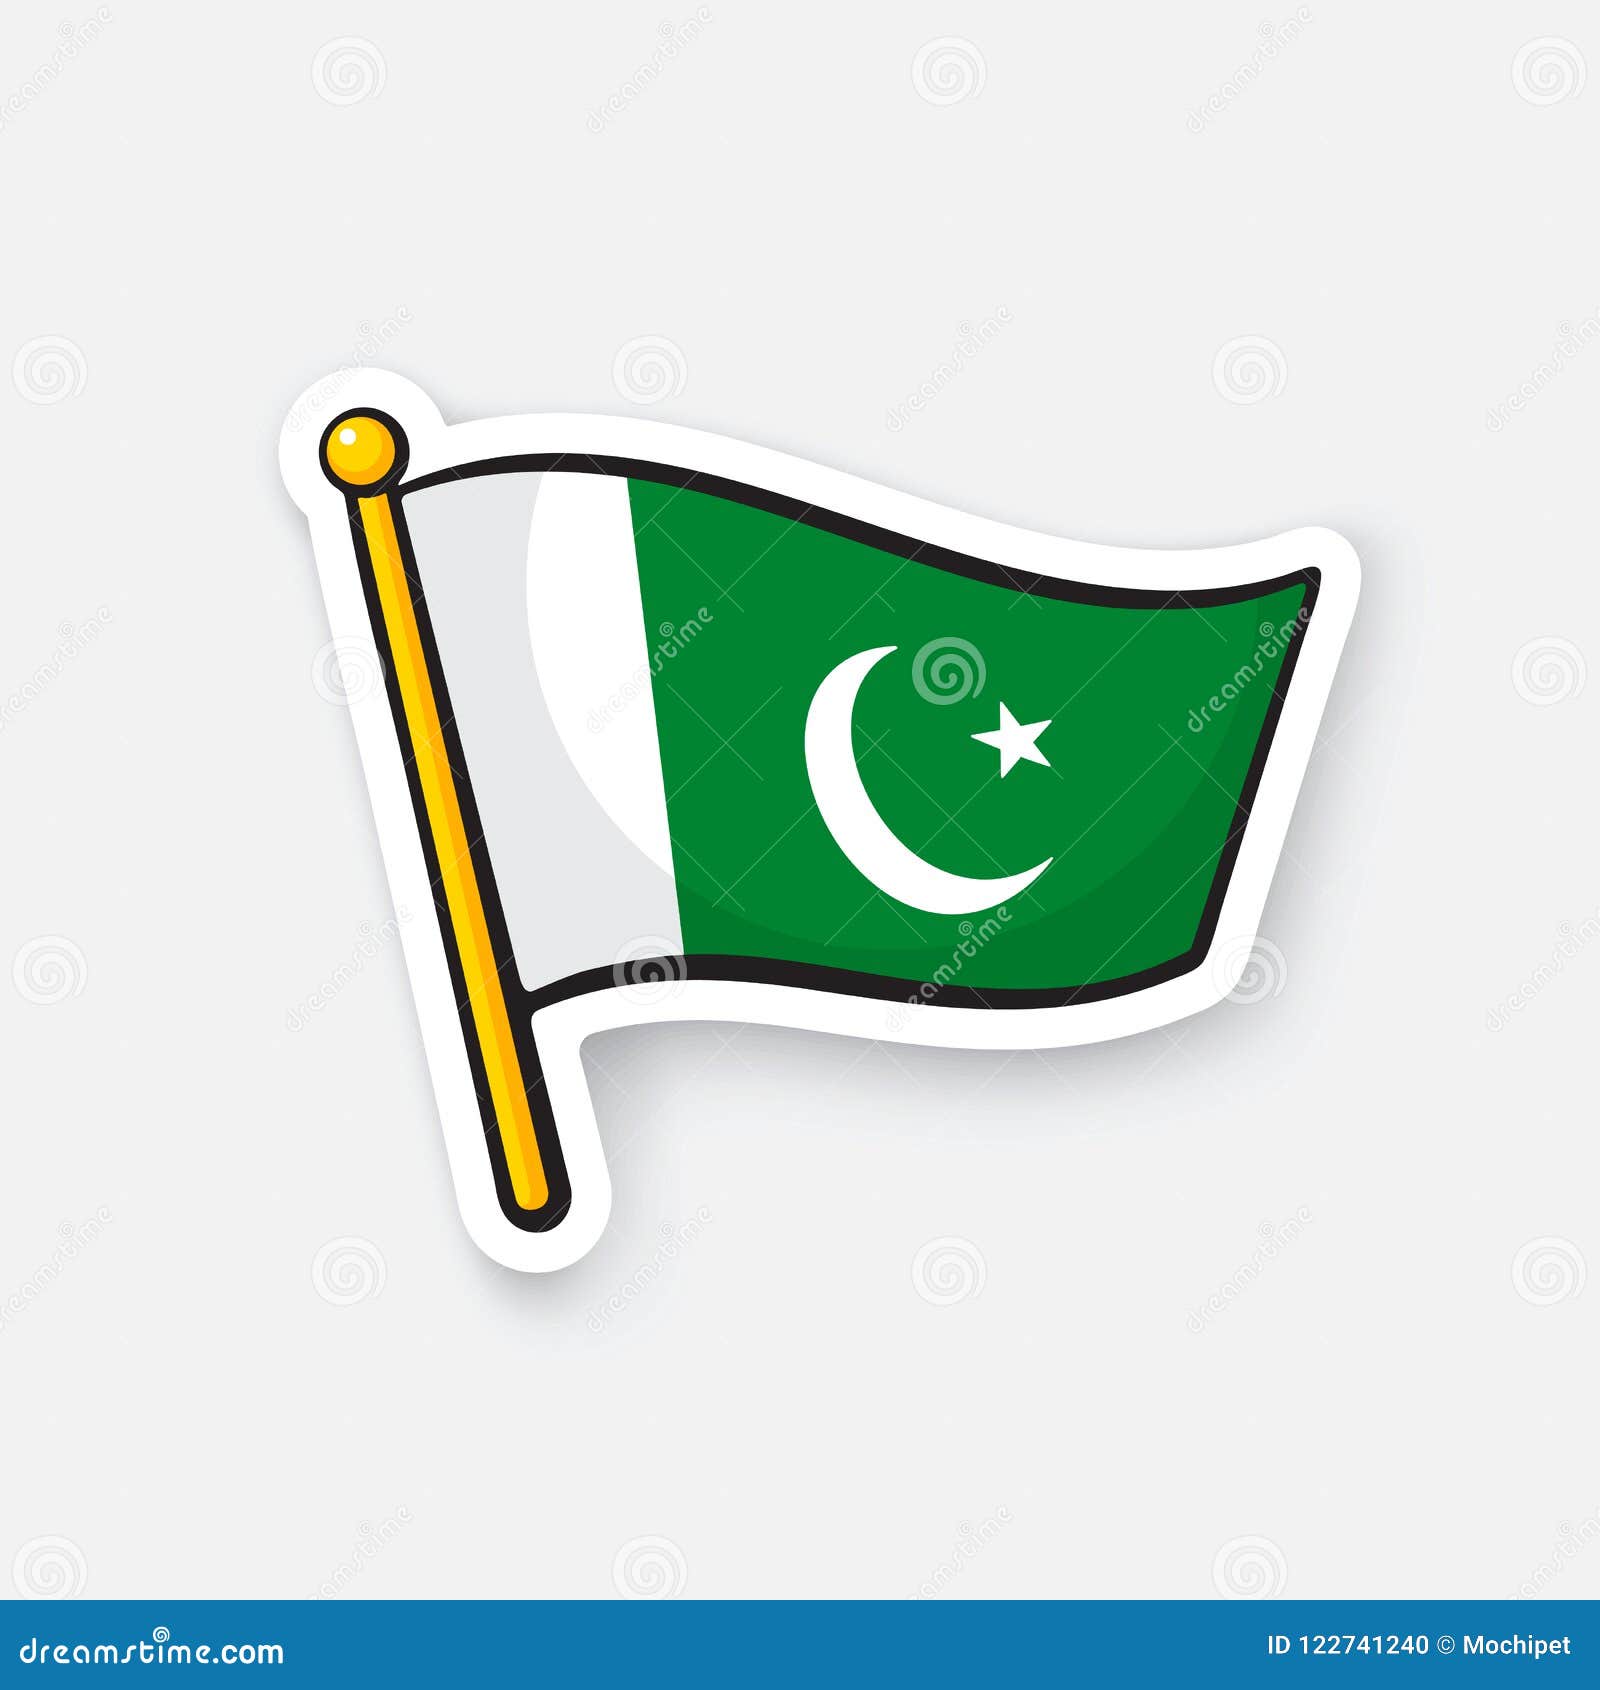 sticker flag of pakistan on flagstaff